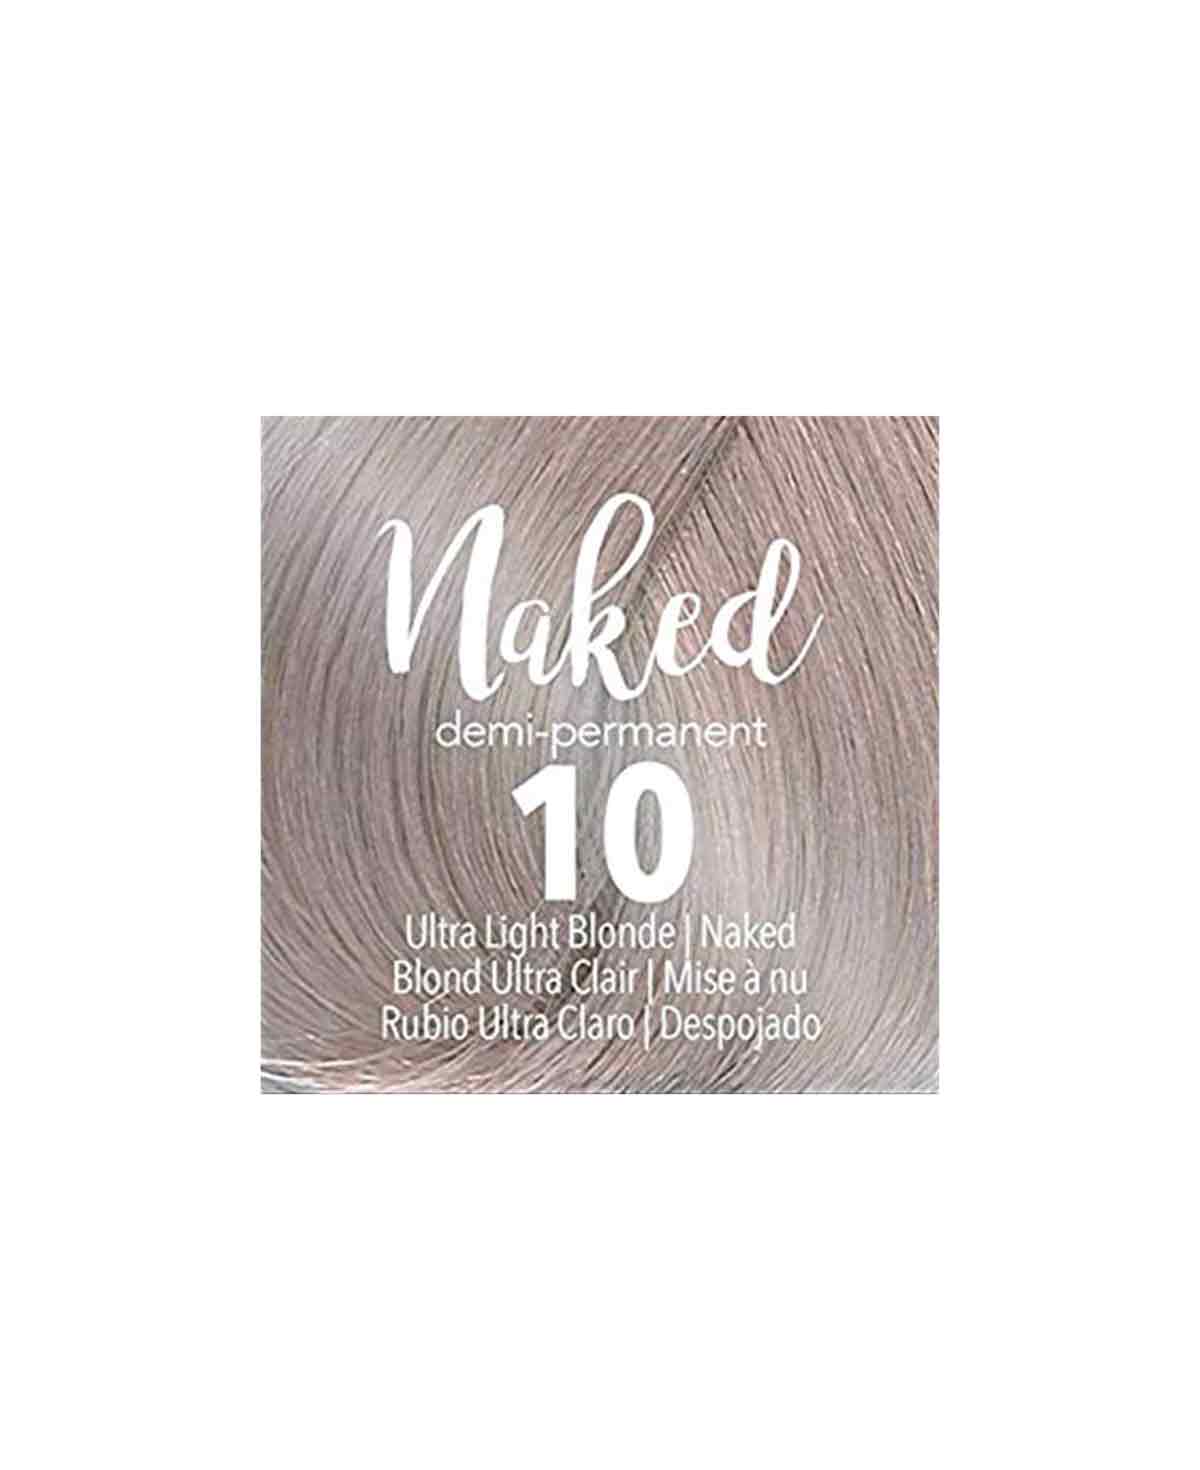 Mydentity - 10 NAKED Ultra Light Blonde Naked Demi-P